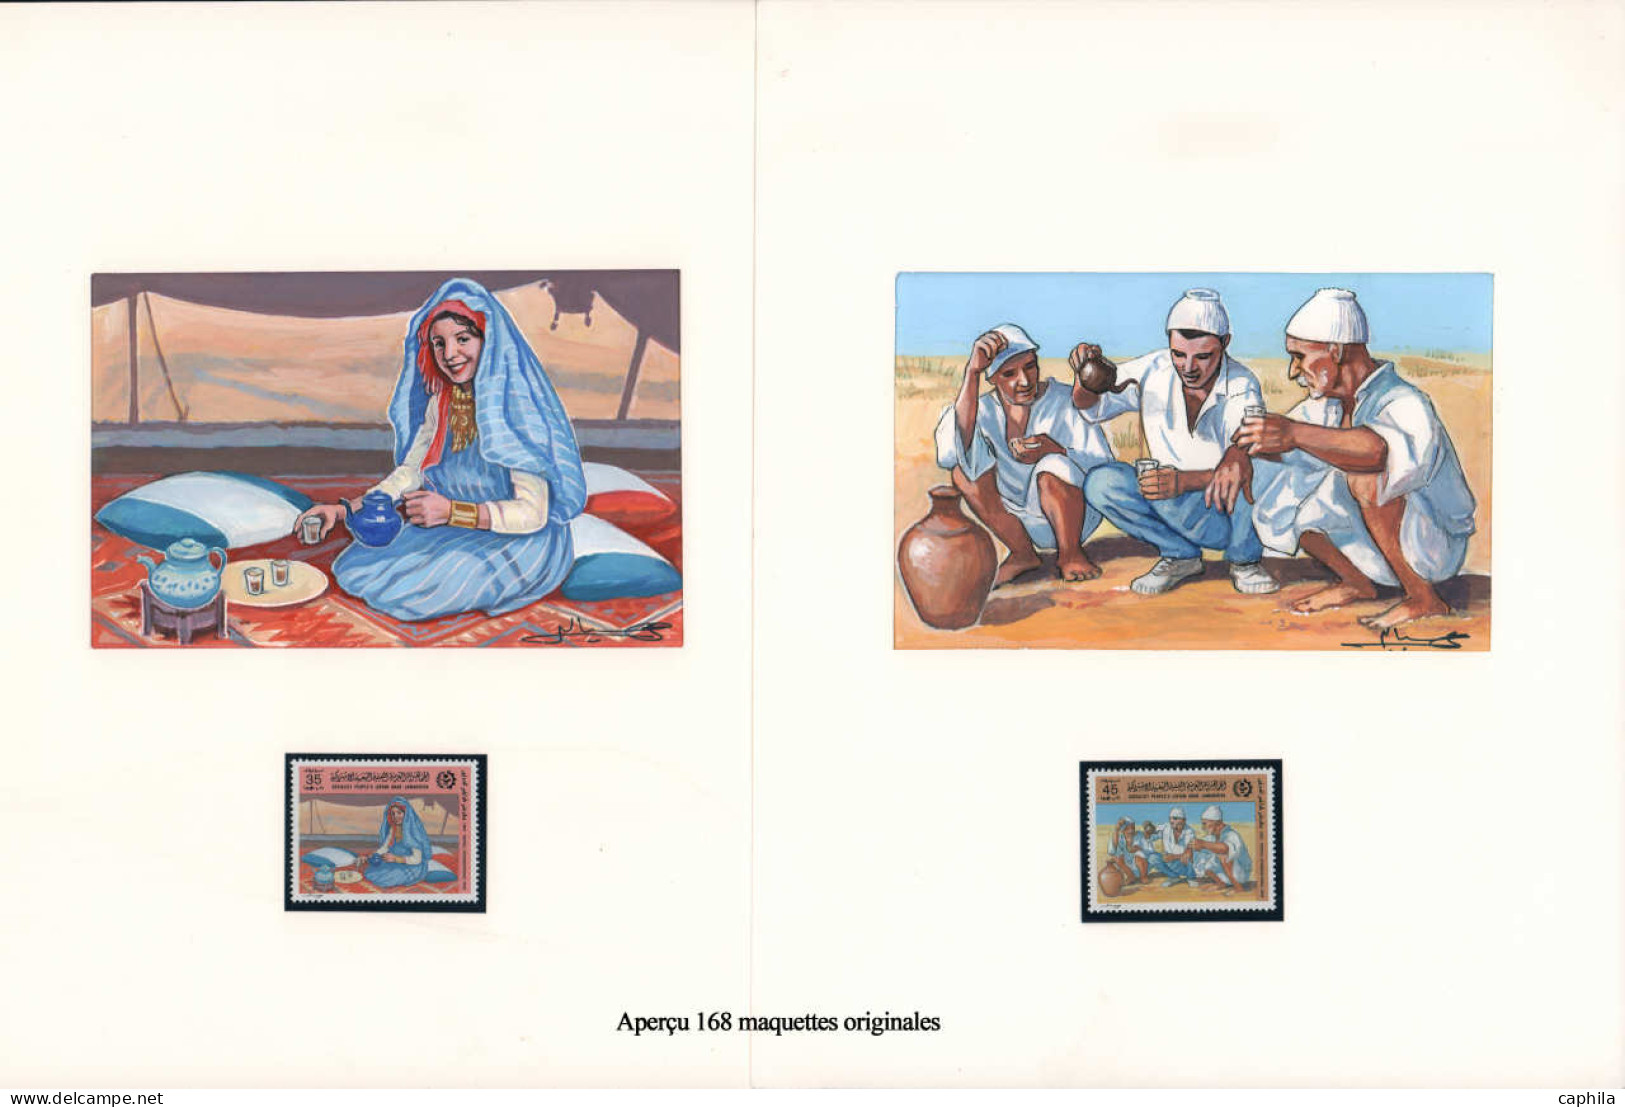 LIBYE Epreuves d'Artiste MAQ - Exceptionnelle collection de 168 maquettes originales, nombreux thématiques: Chevaux, fru